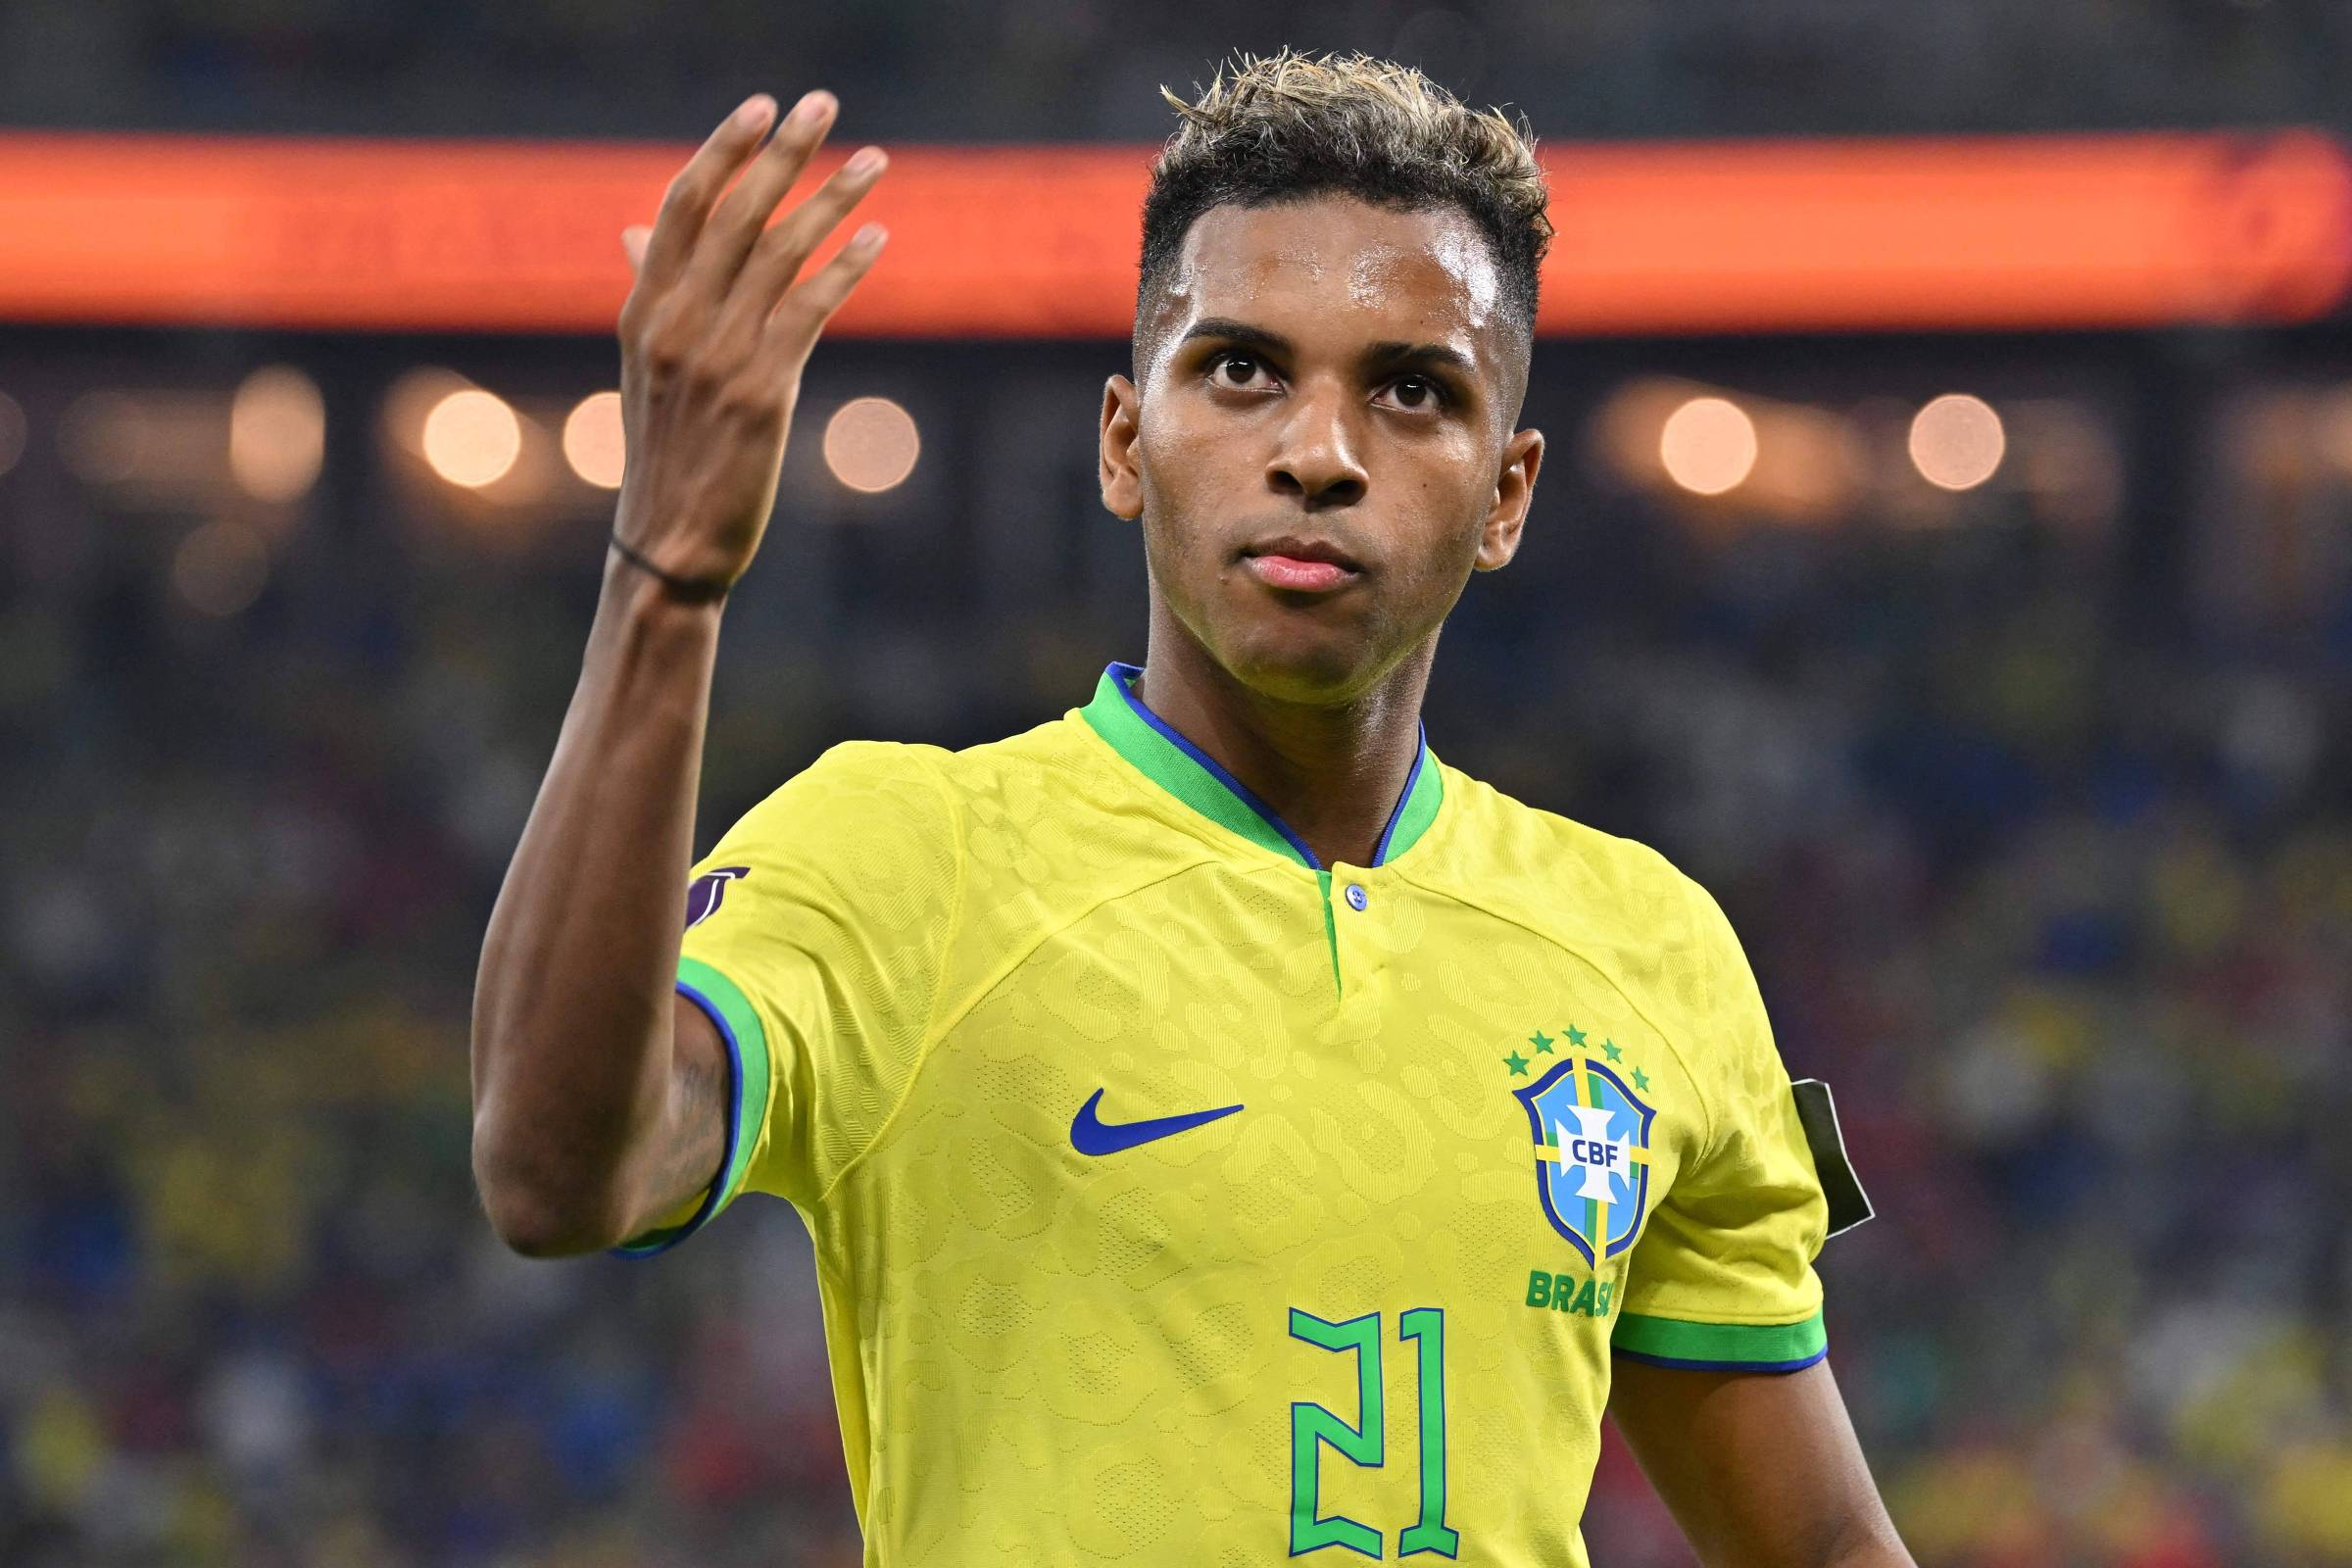 Camisa de Time-Brasil-Seleção-Versão Jogador-Qualidade-Menor Preço